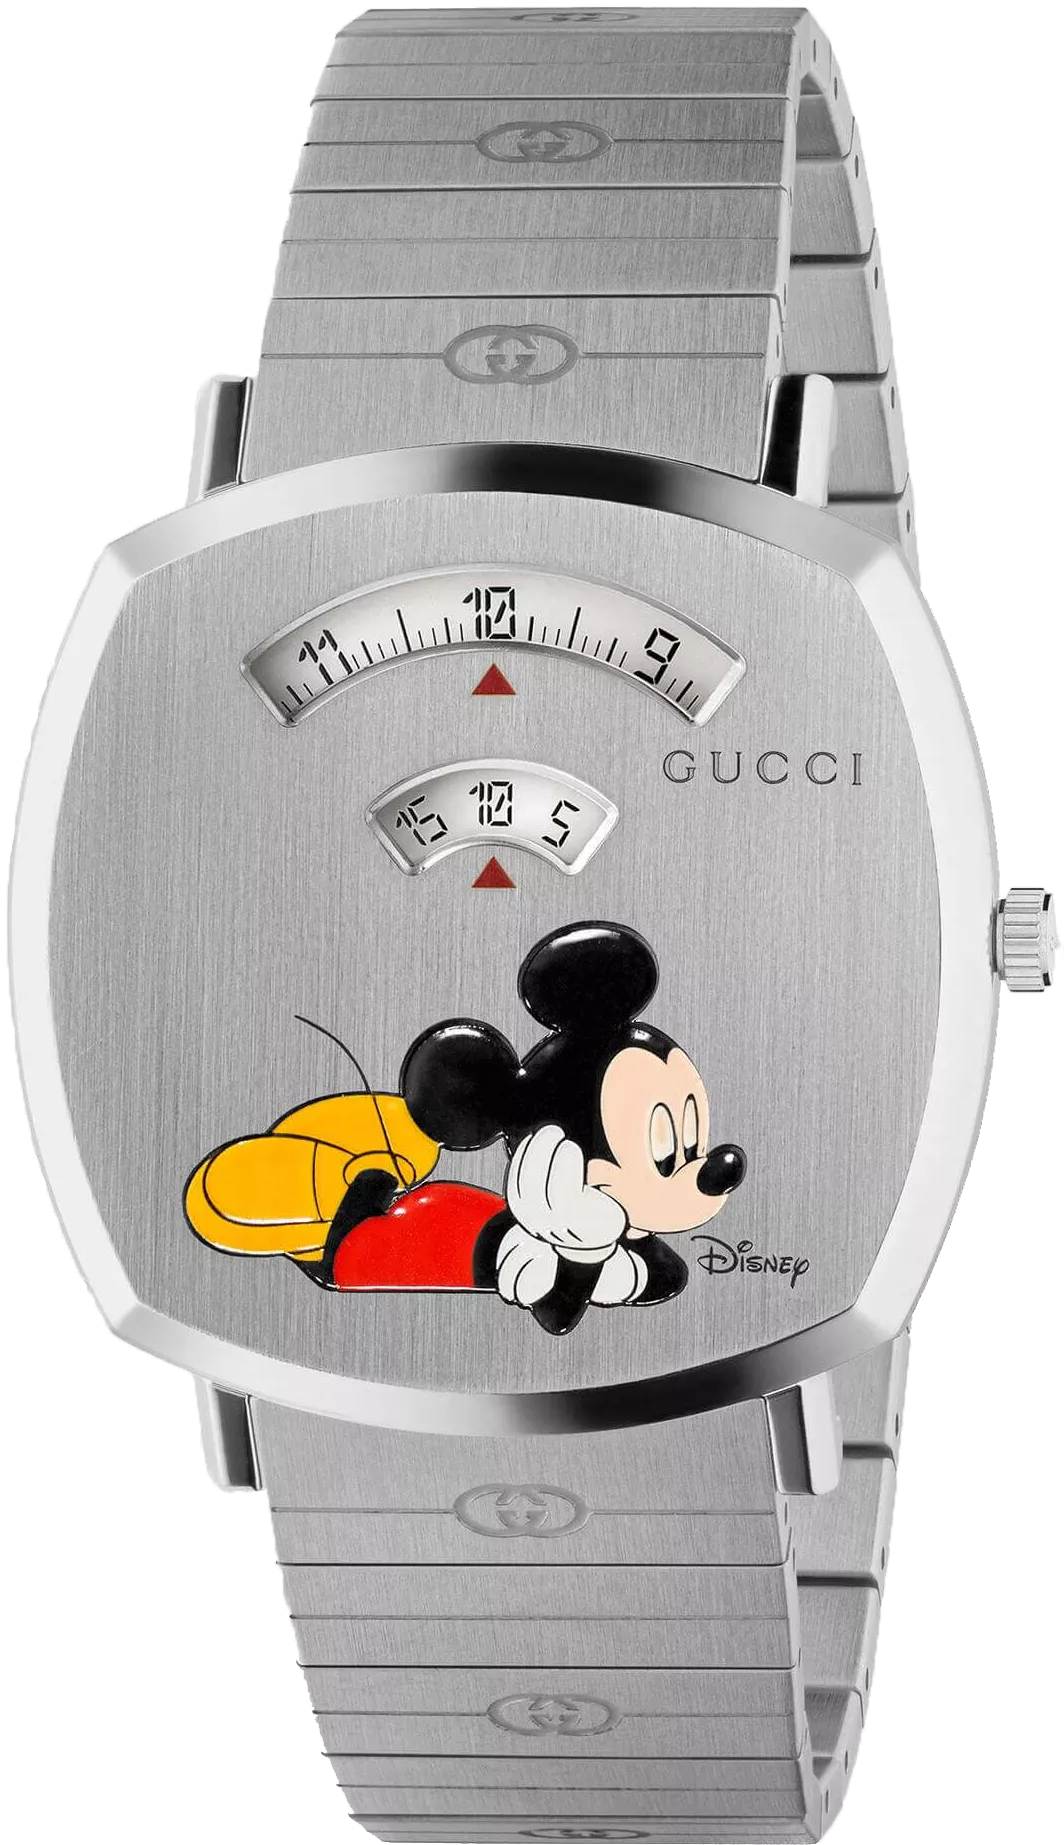 MSP: 91159 Gucci Disney x Grip watch 38mm 44,460,000